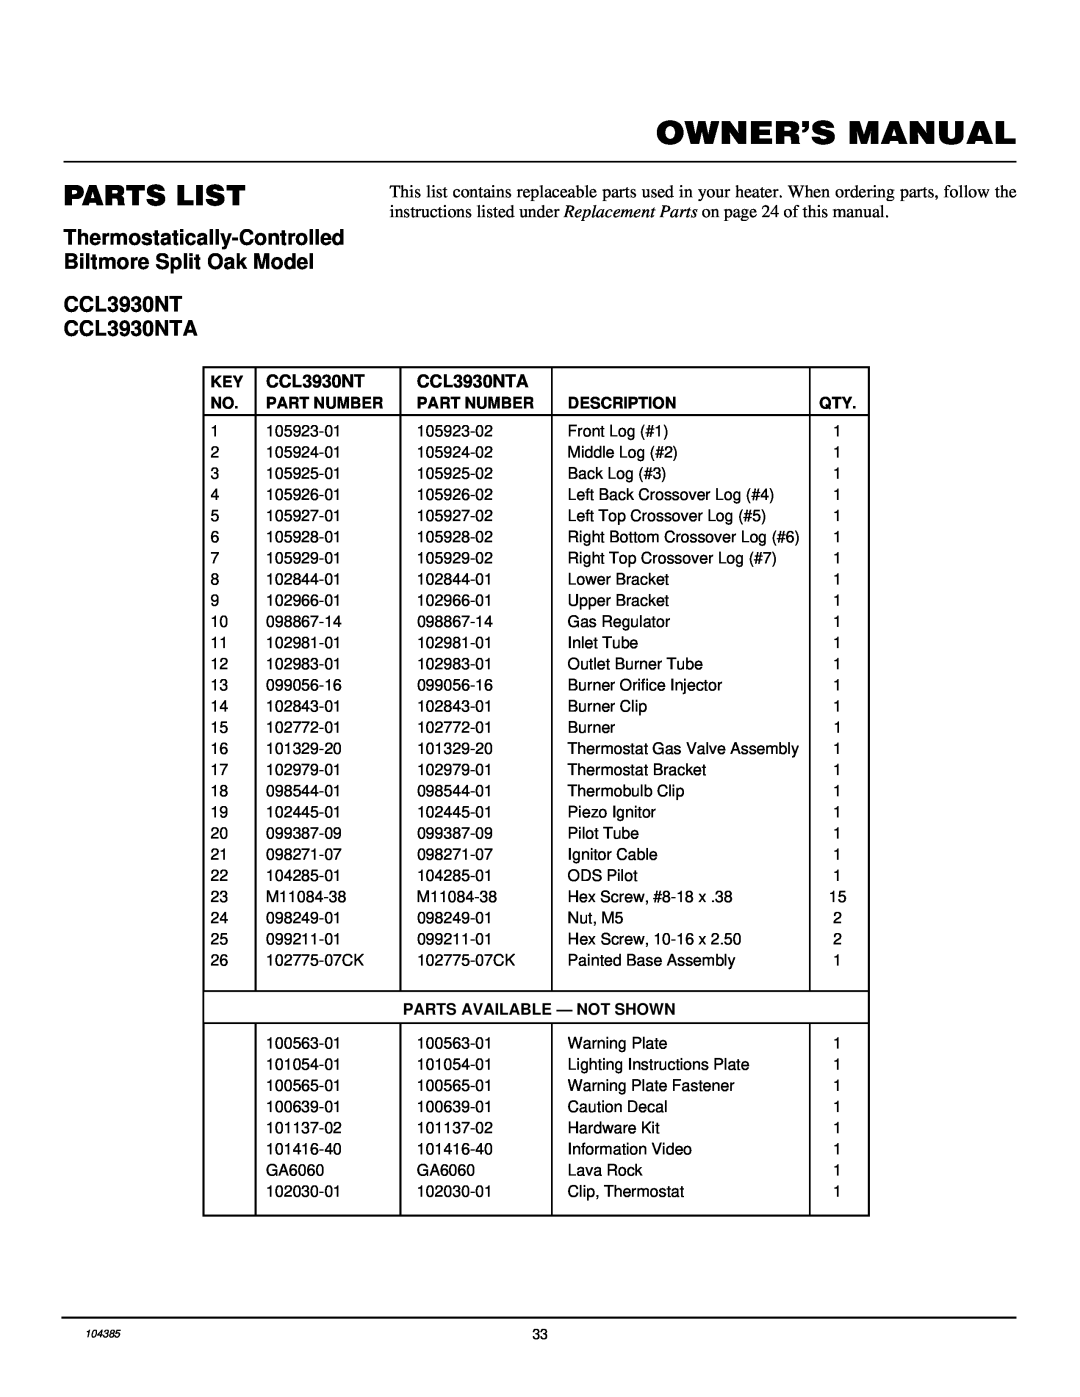 Desa CLD3018N, CLD3924NT CCL3930NT CCL3930NTA, Parts List, Part Number, Description, Parts Available - Not Shown 